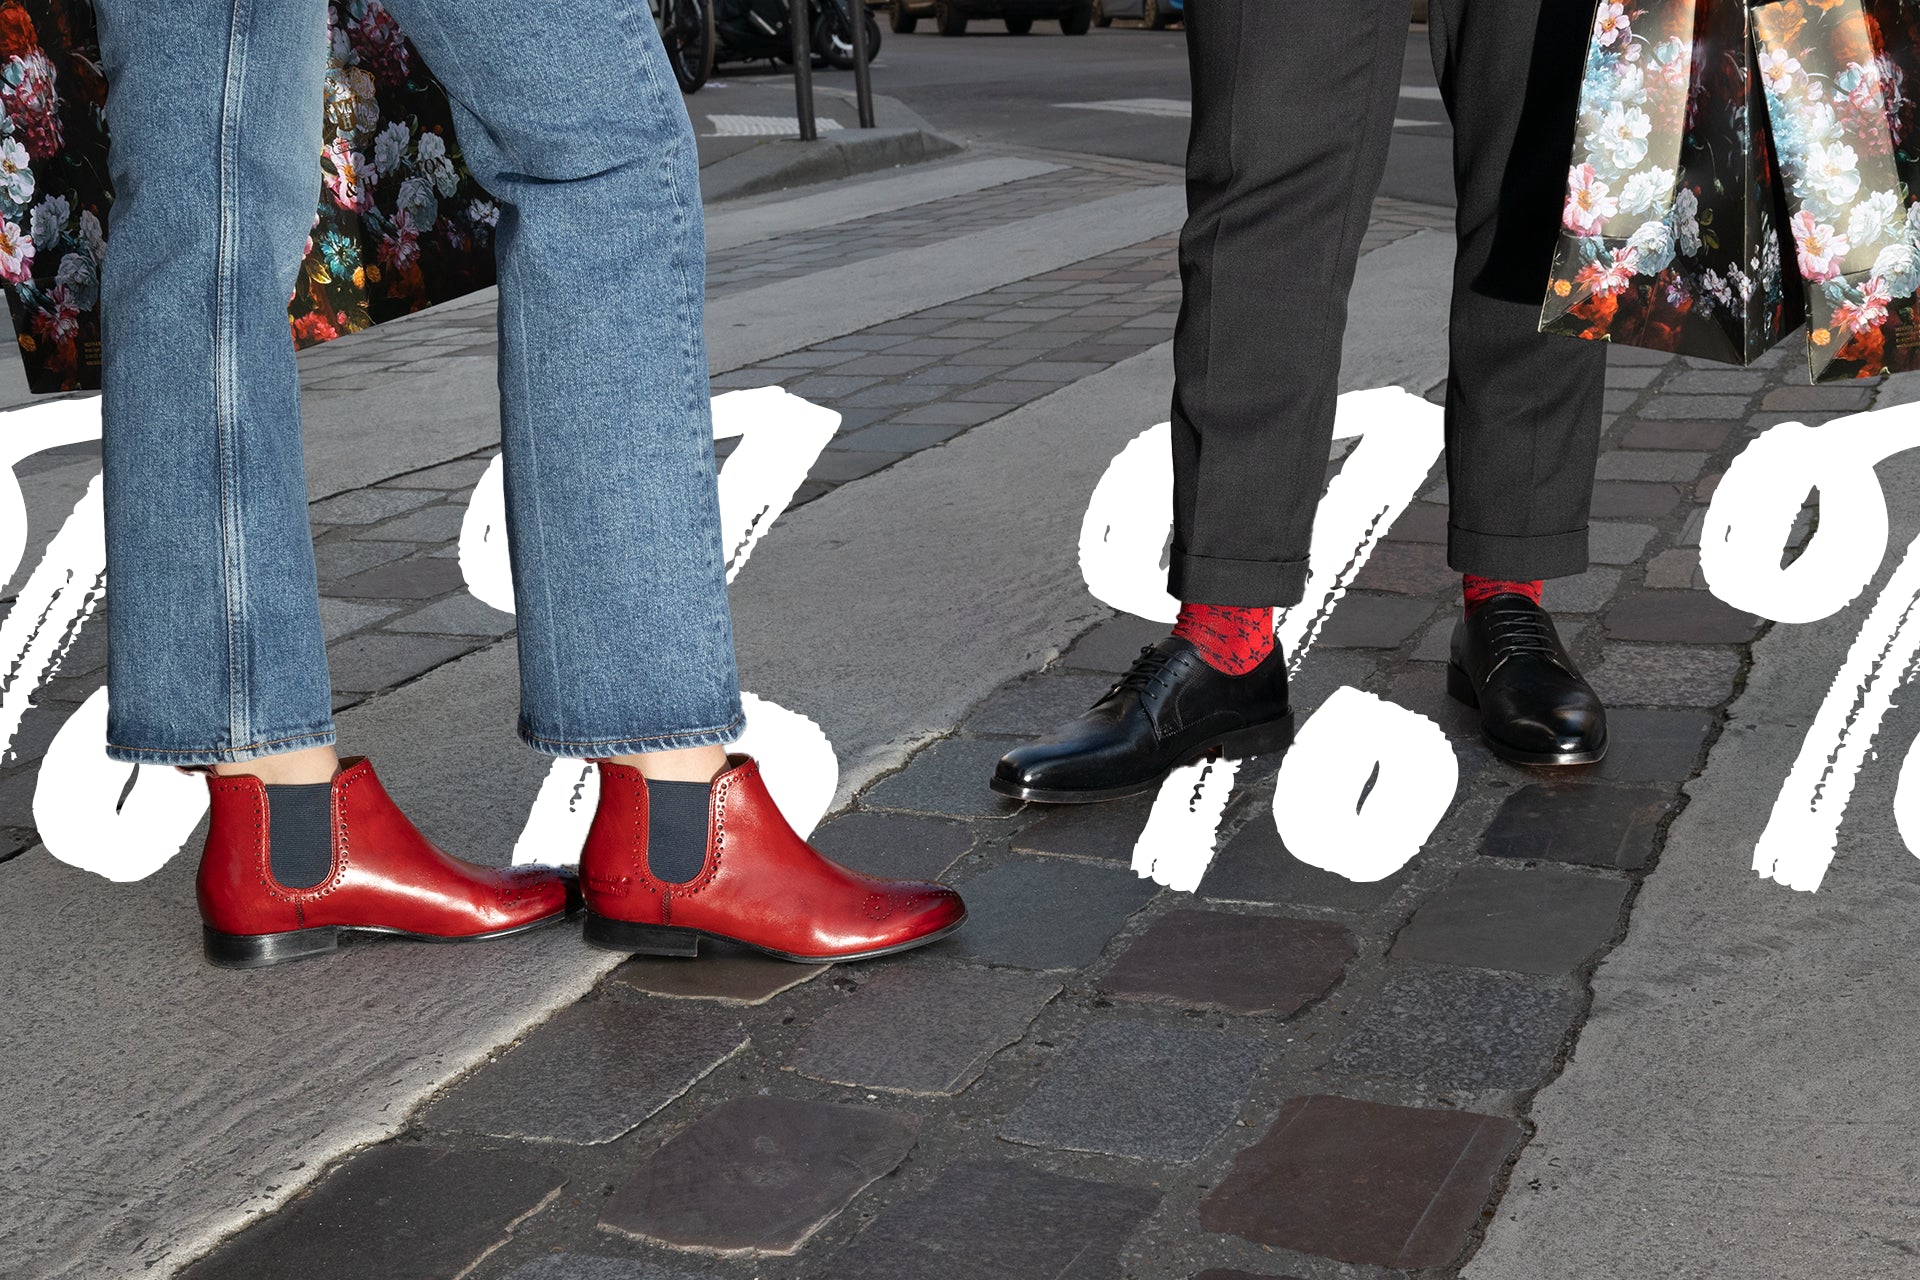 Comment porter des chaussures colorées pour homme ? – Melvin & Hamilton